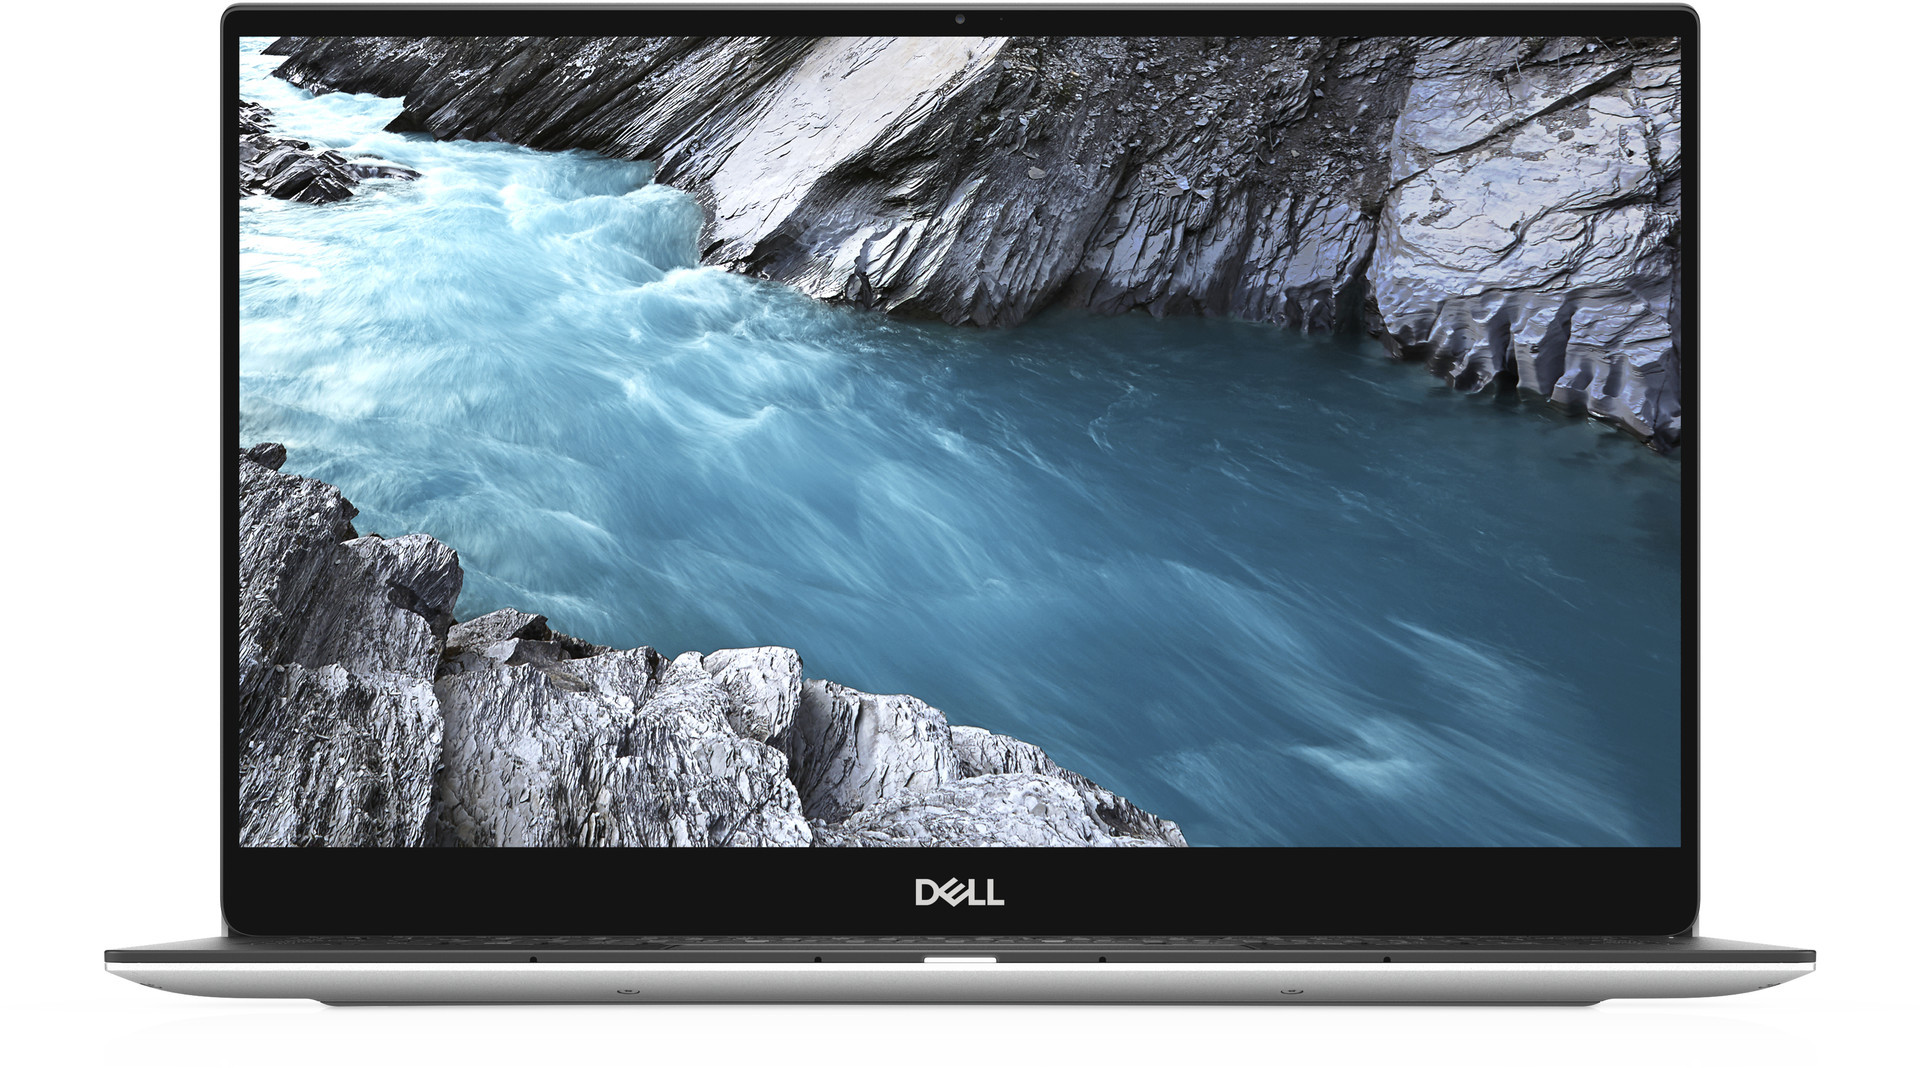 Dell XPS 9380 FULL HD | INTEL CORE I7 | 8GB | 512GB SSD | WINDOWS 10 PRO